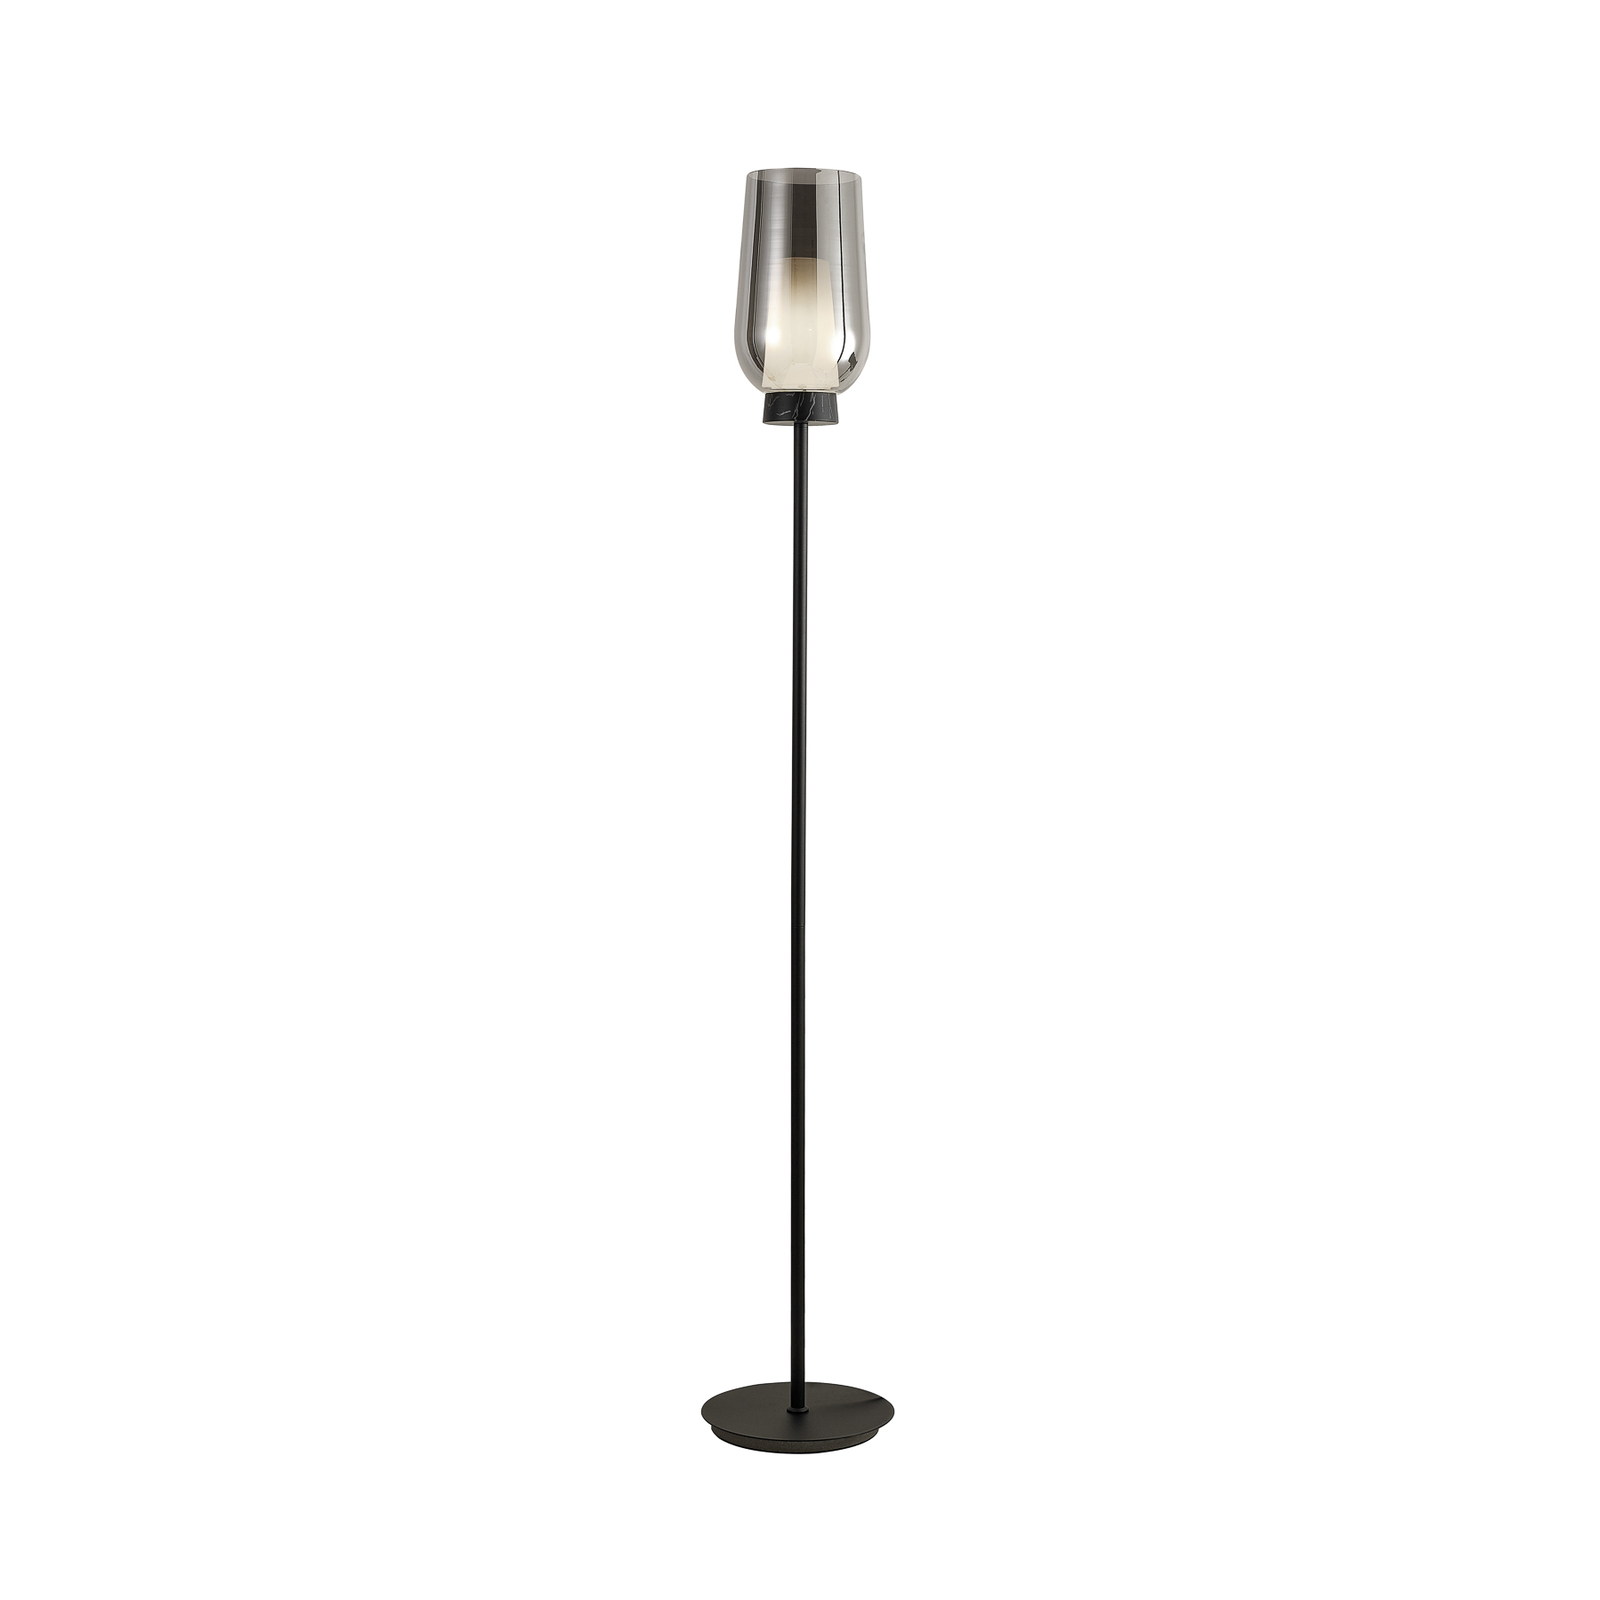 Nora gulvlampe, sort-krom, metal, glas